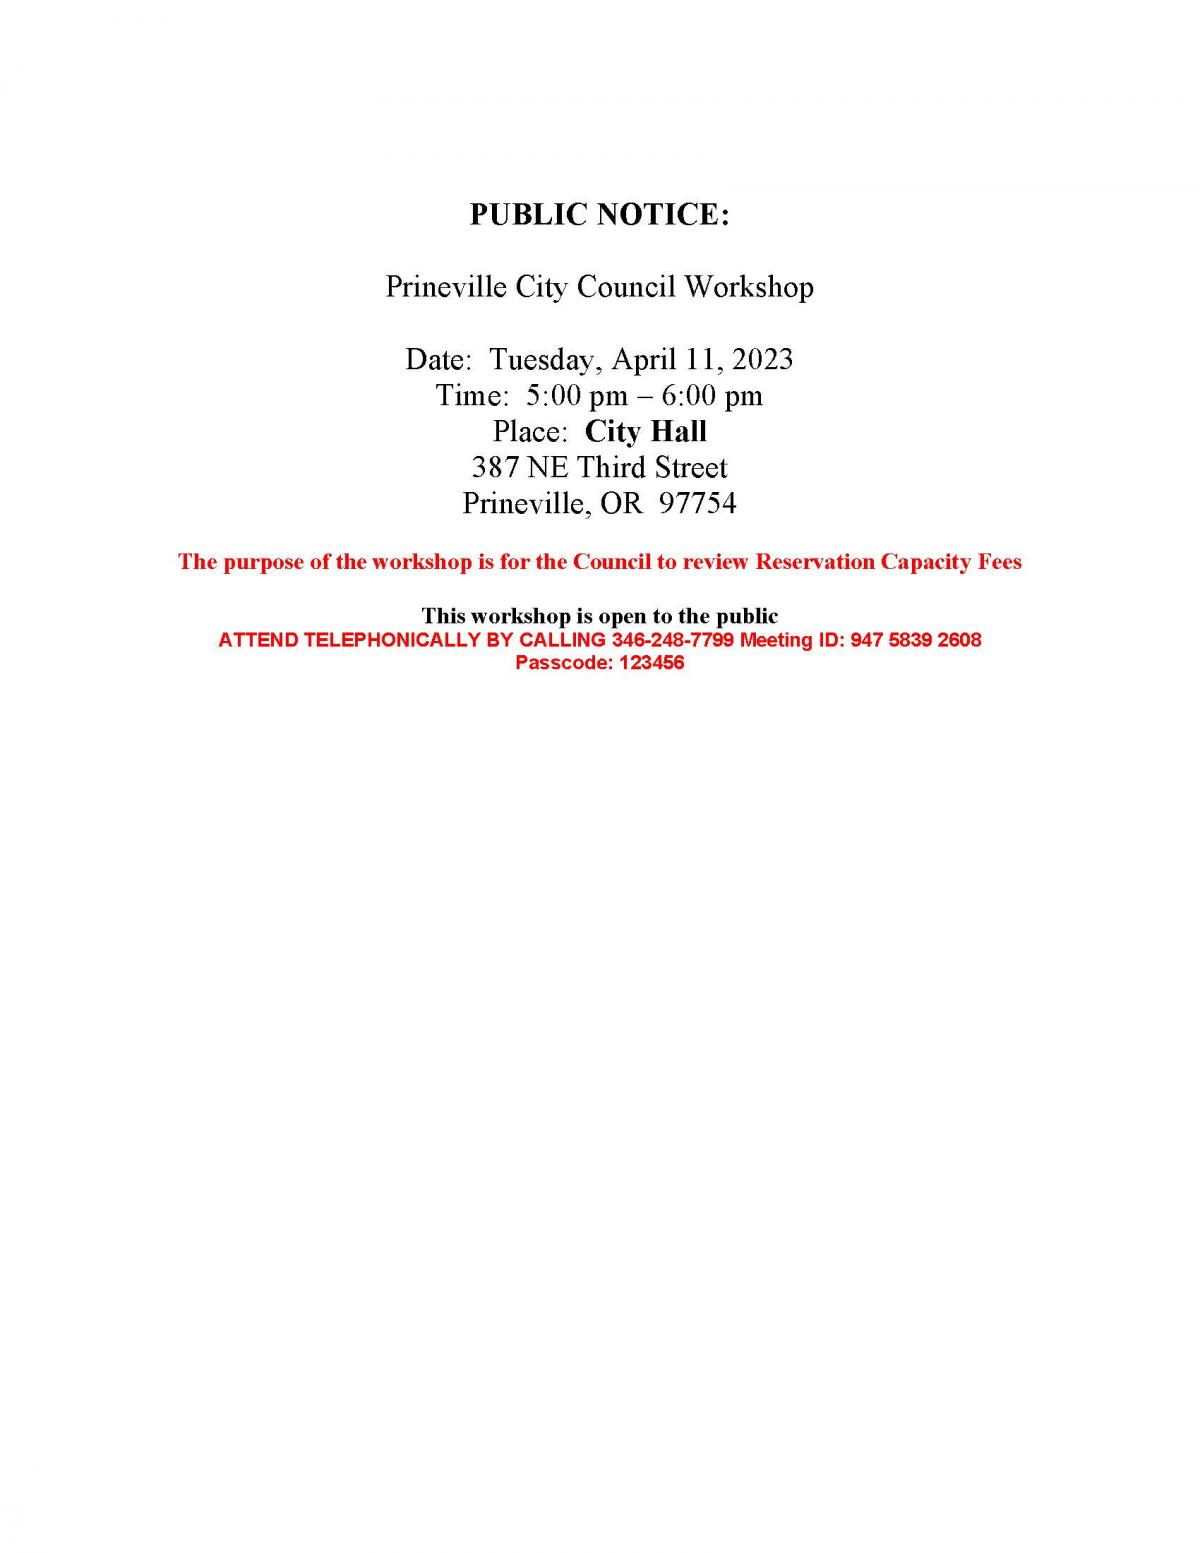 Public Notice - Council Workshop 4-11-2023